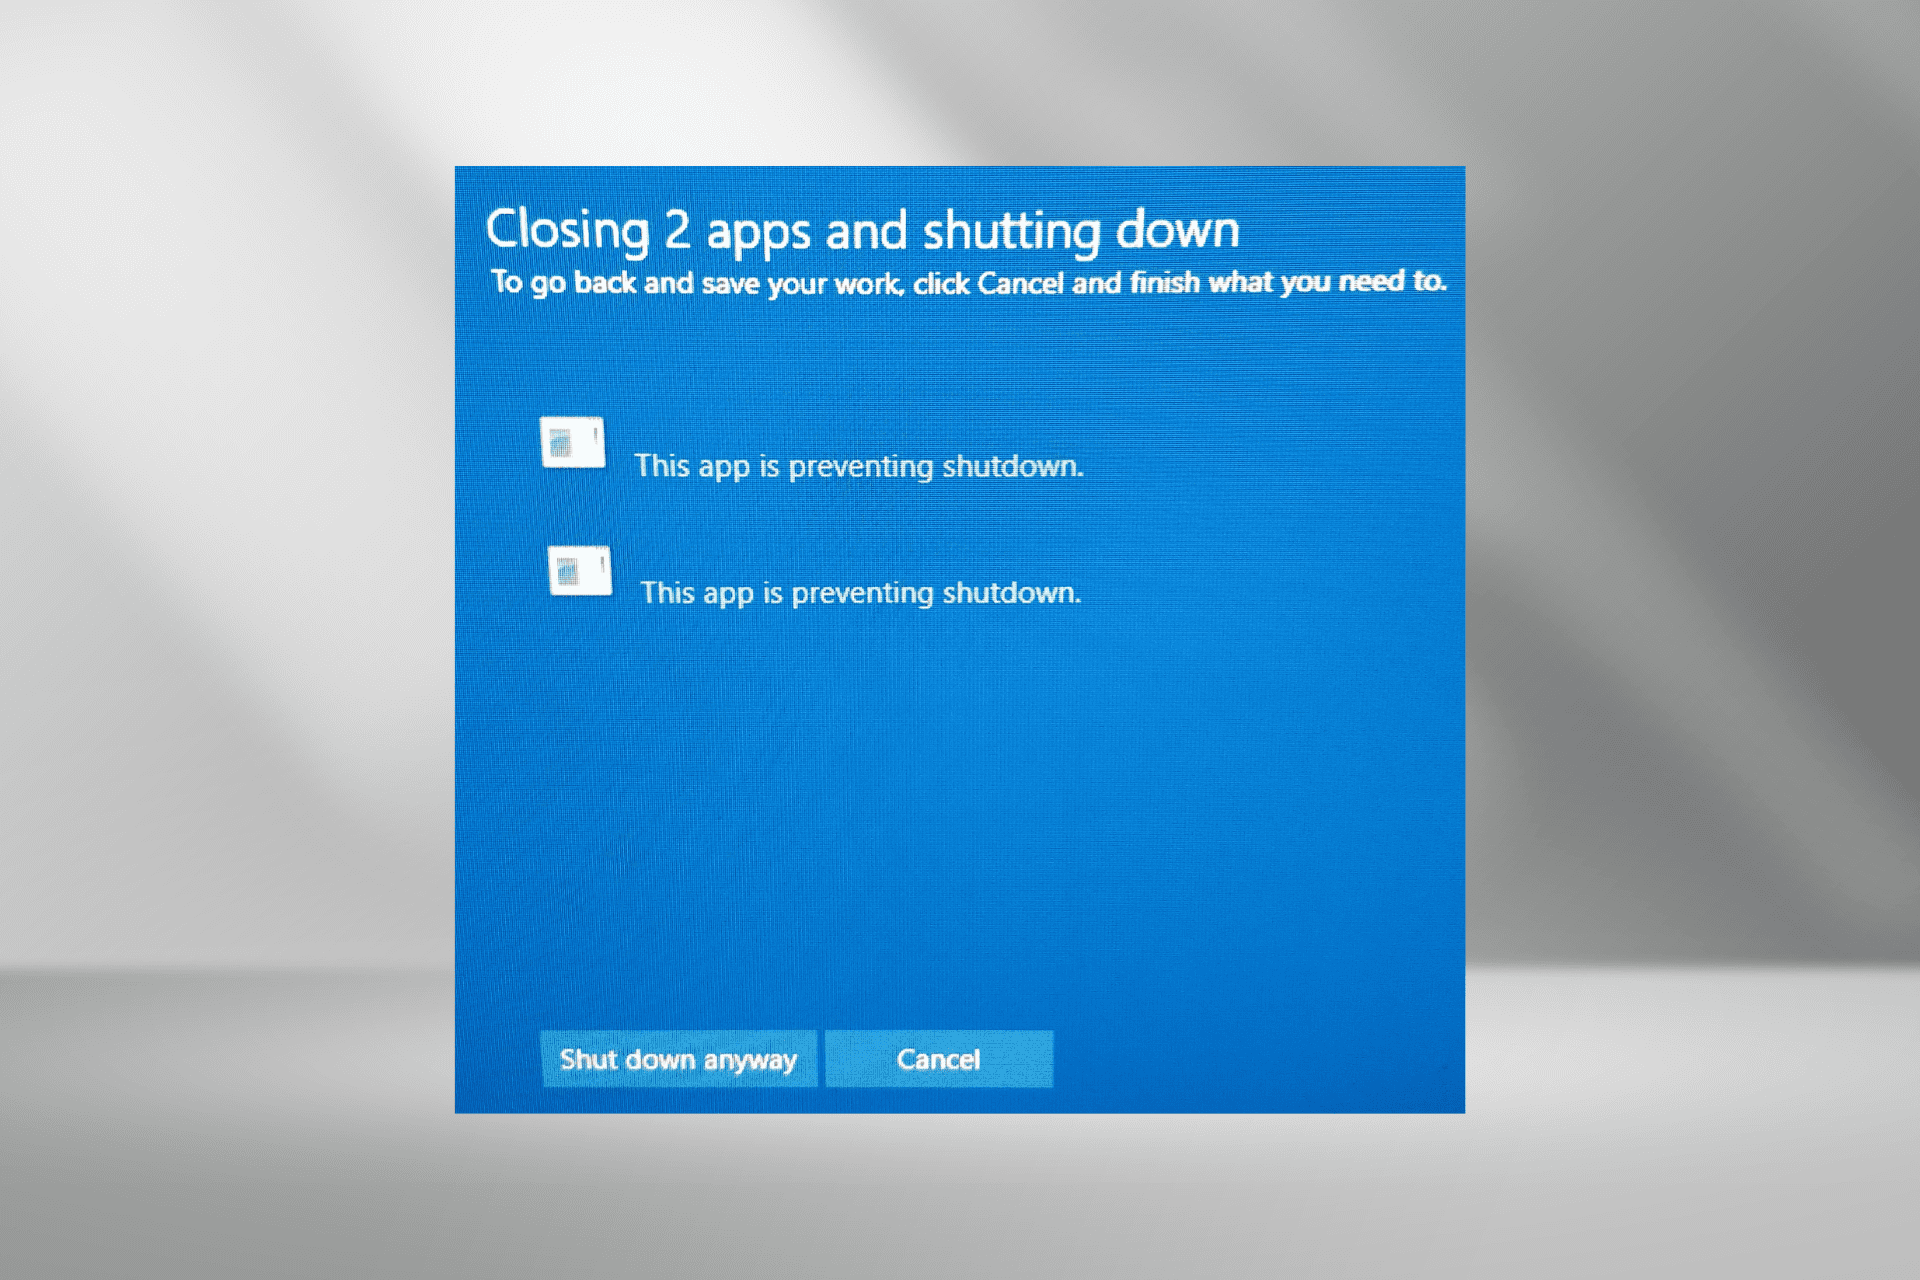 fix this app preventing shutdown error